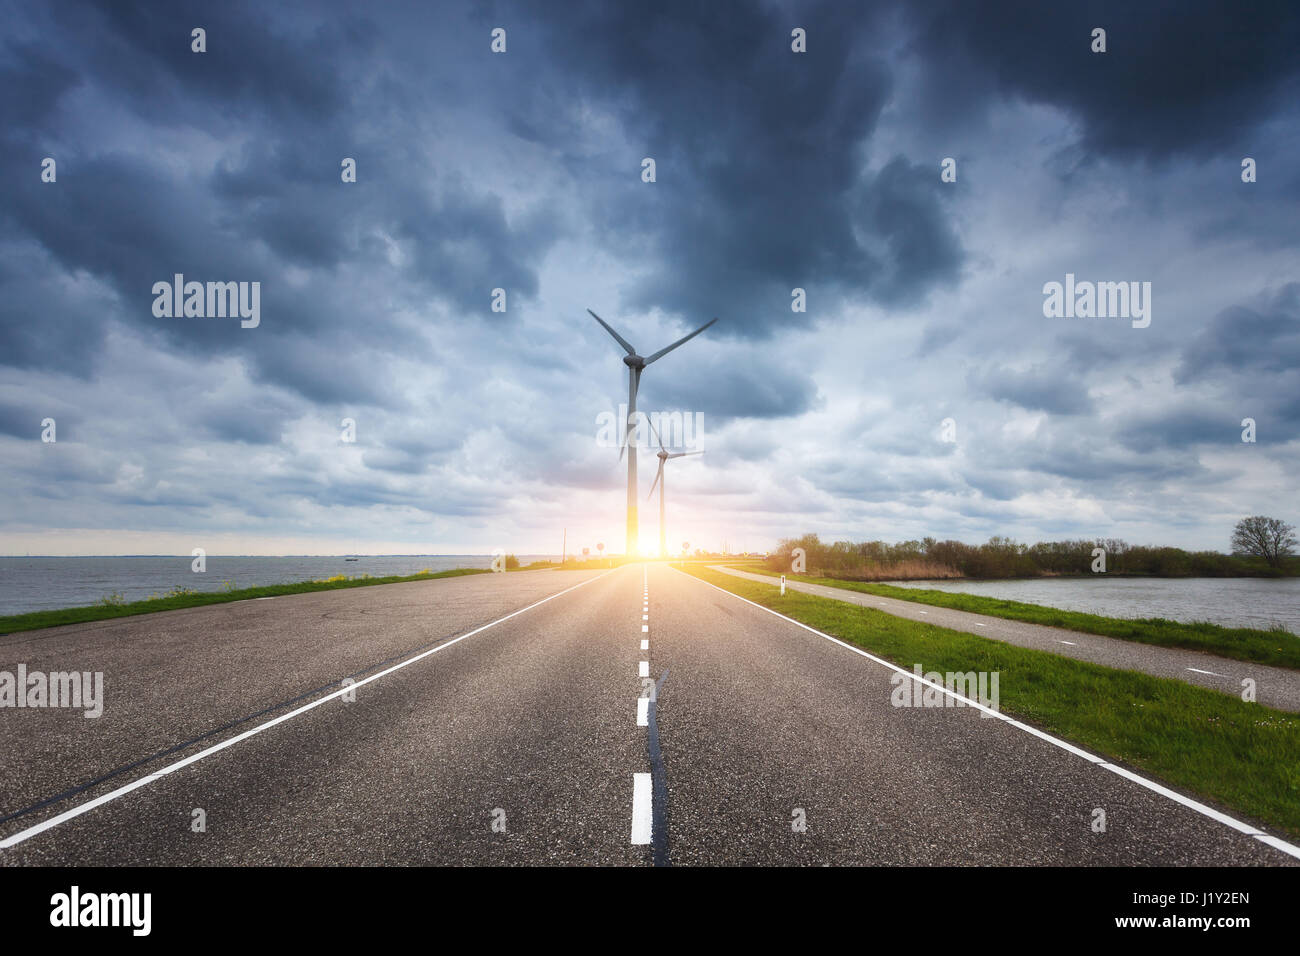 Schöne asphaltierte Straße mit Windkraftanlagen zur Stromerzeugung bei Sonnenuntergang. Windmühlen zur Stromerzeugung. Landschaft mit Strasse, grünen Rasen Stockfoto